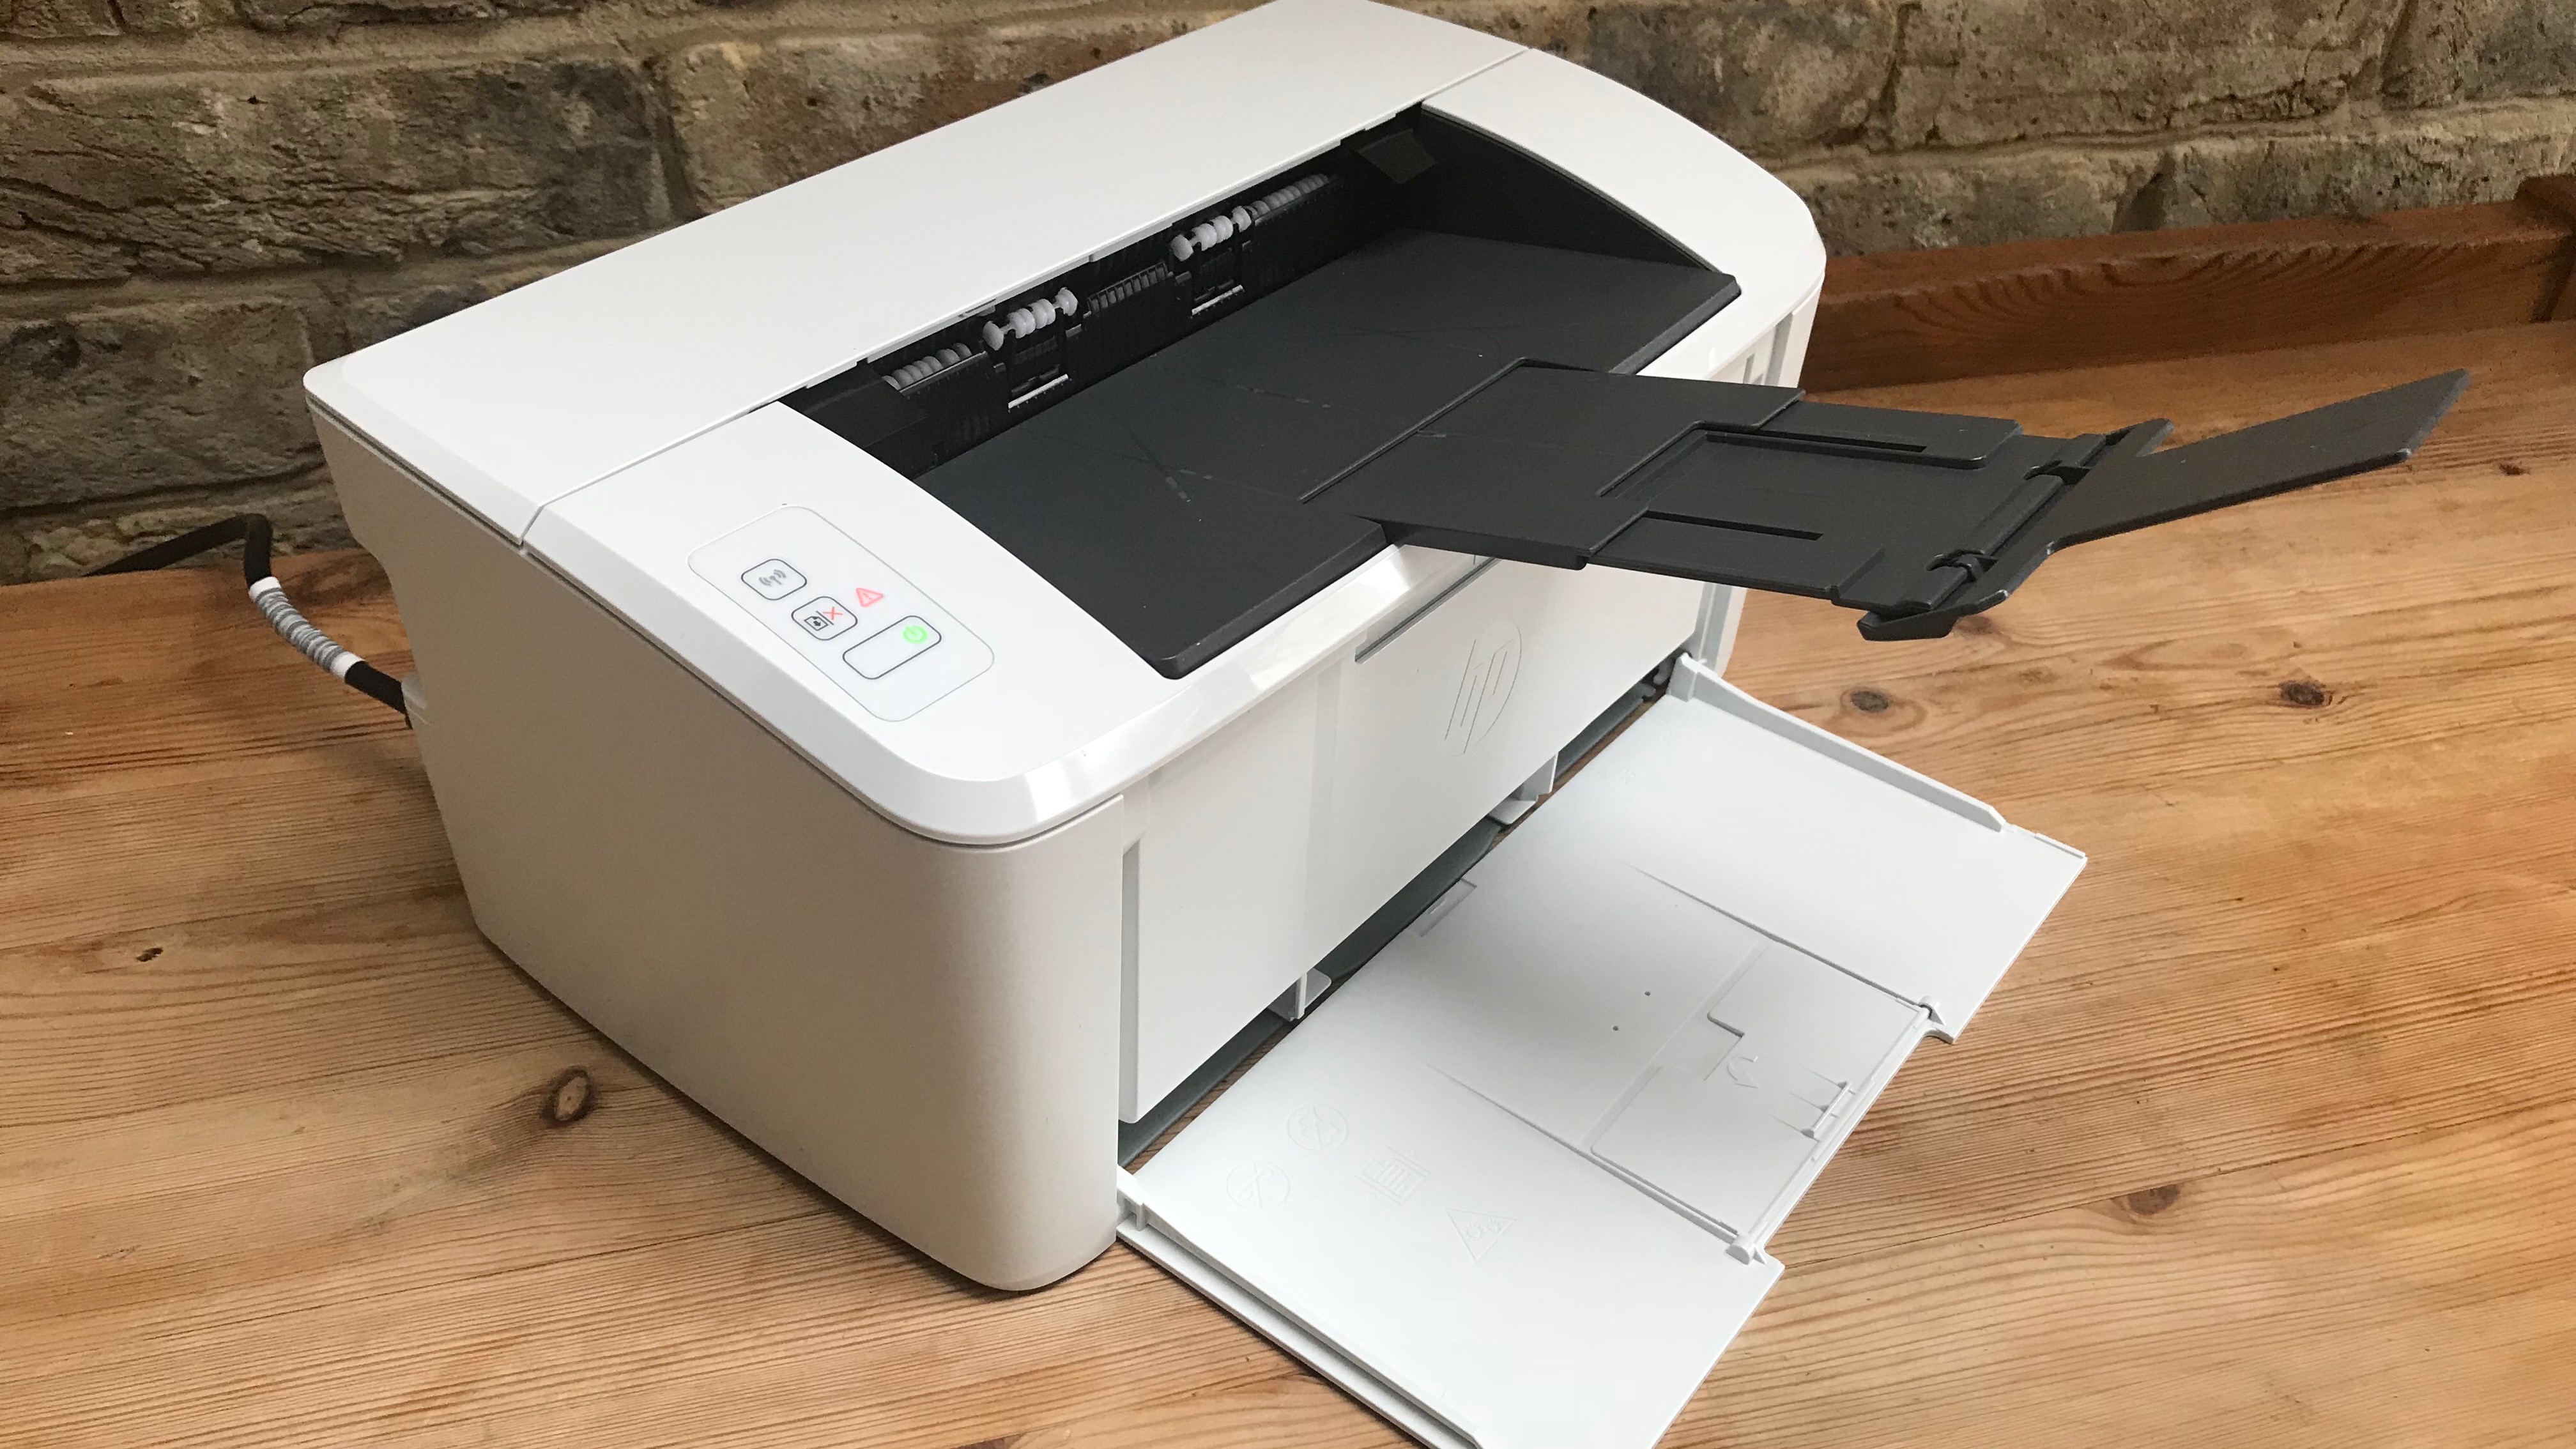 Kelebihan HP LaserJet Pro M15w Printer, White